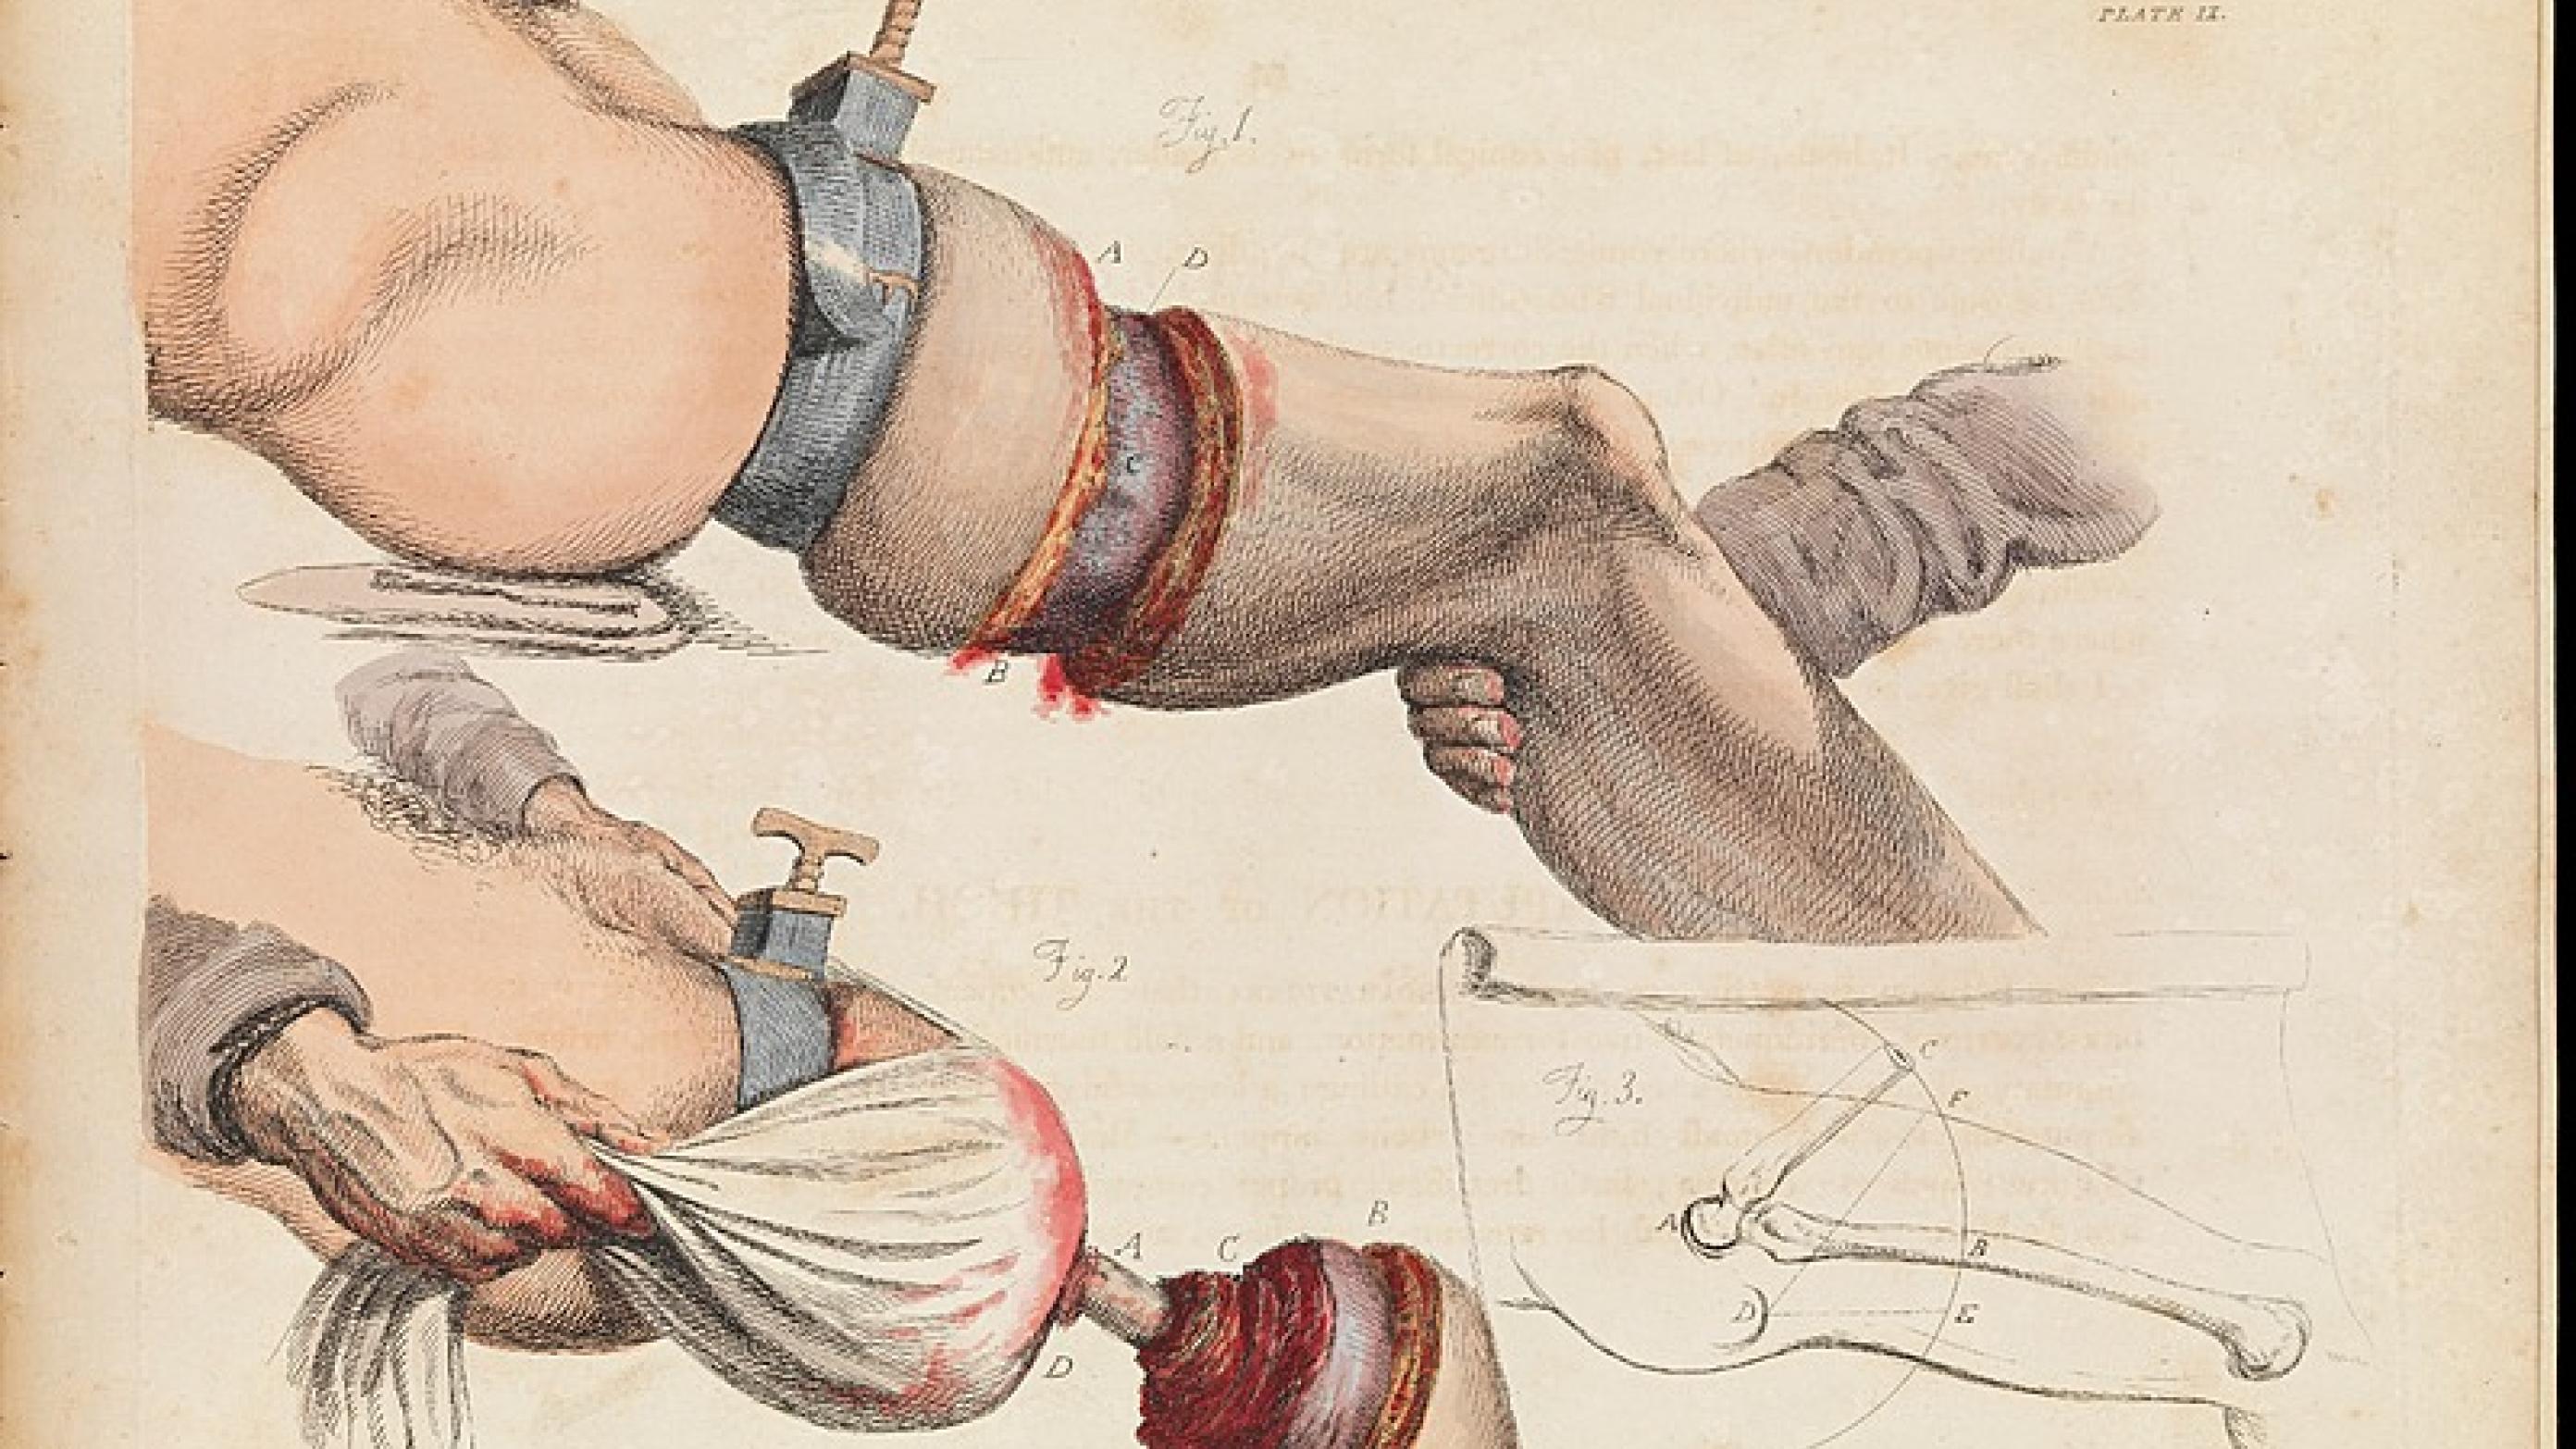 Kirurgiens største fremskridt i 1800-tallet var æterbedøvelsen, som havde debut i 1846. Den kirurgiske planche er fra årene før og viser en låramputation med anvendelse af tourniquet. (Wellcome Collection)